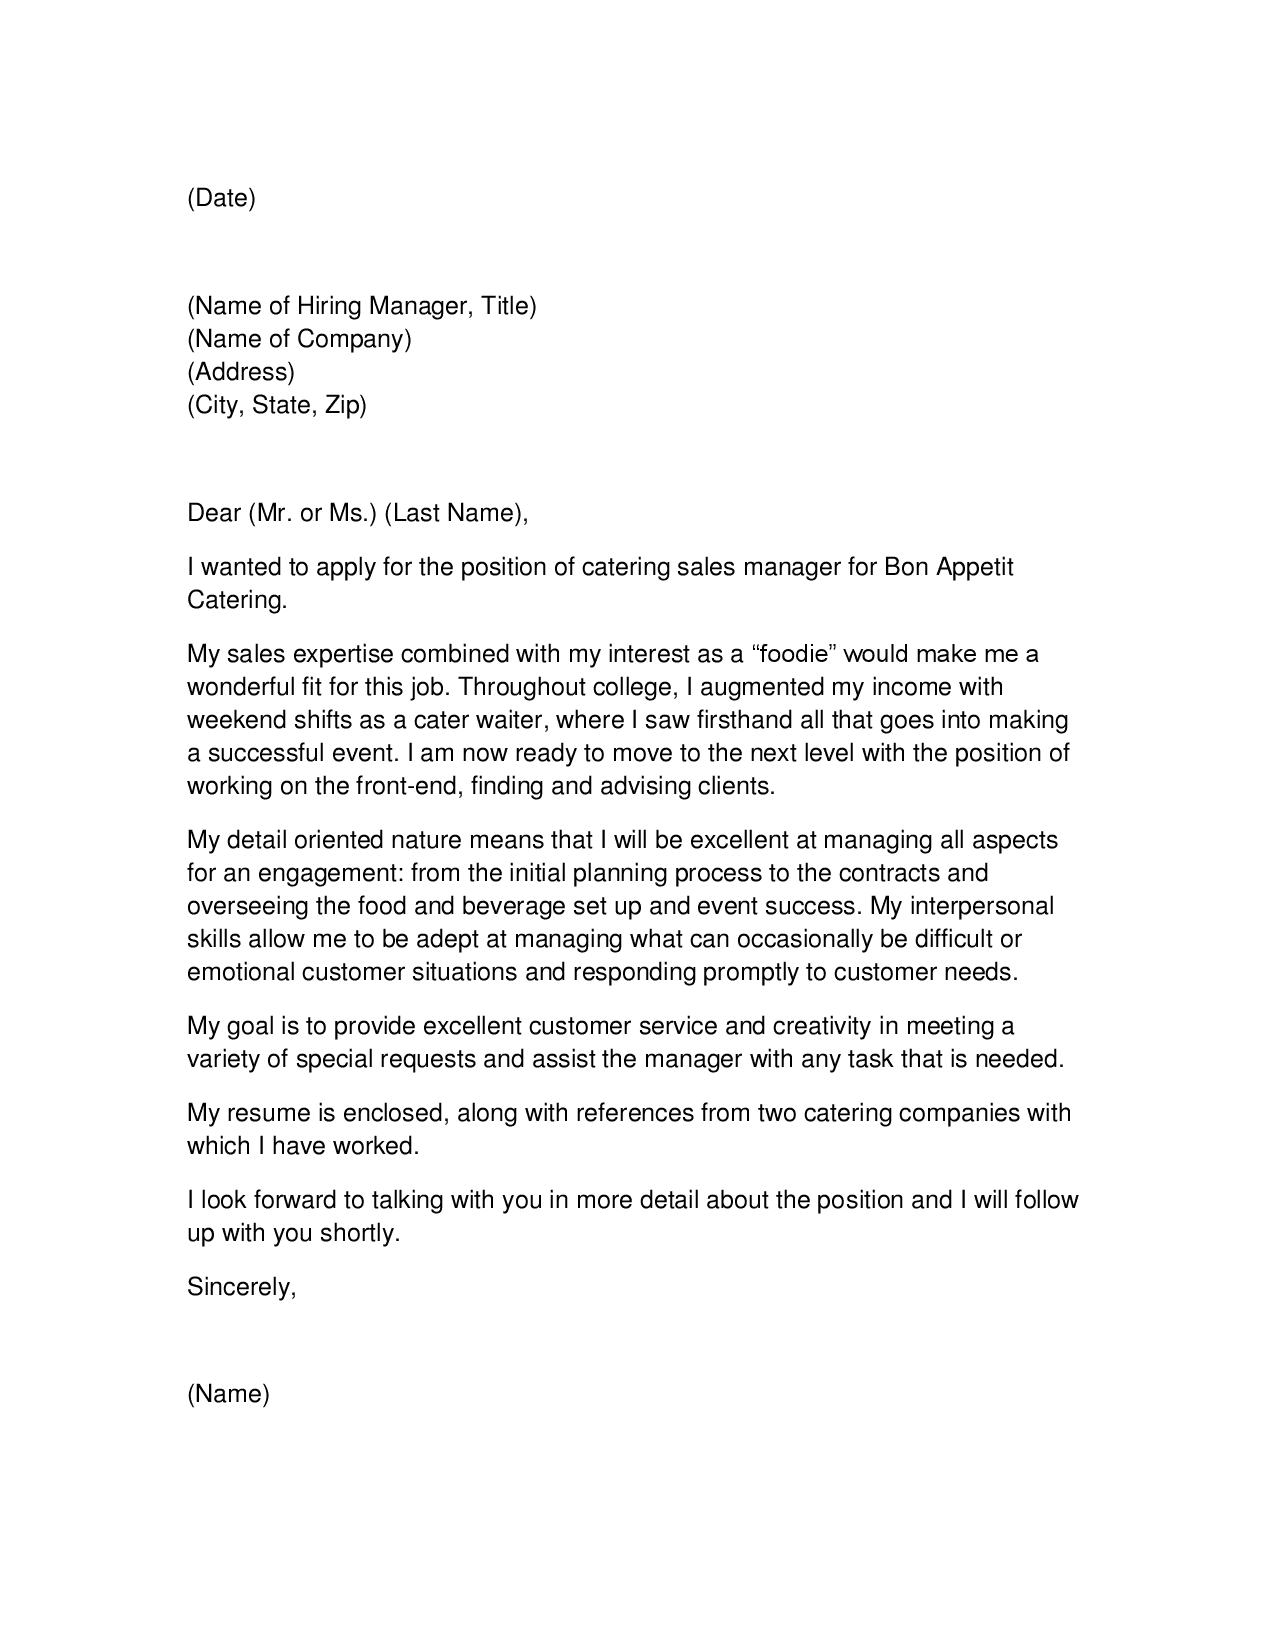 Mock cover letter for resume